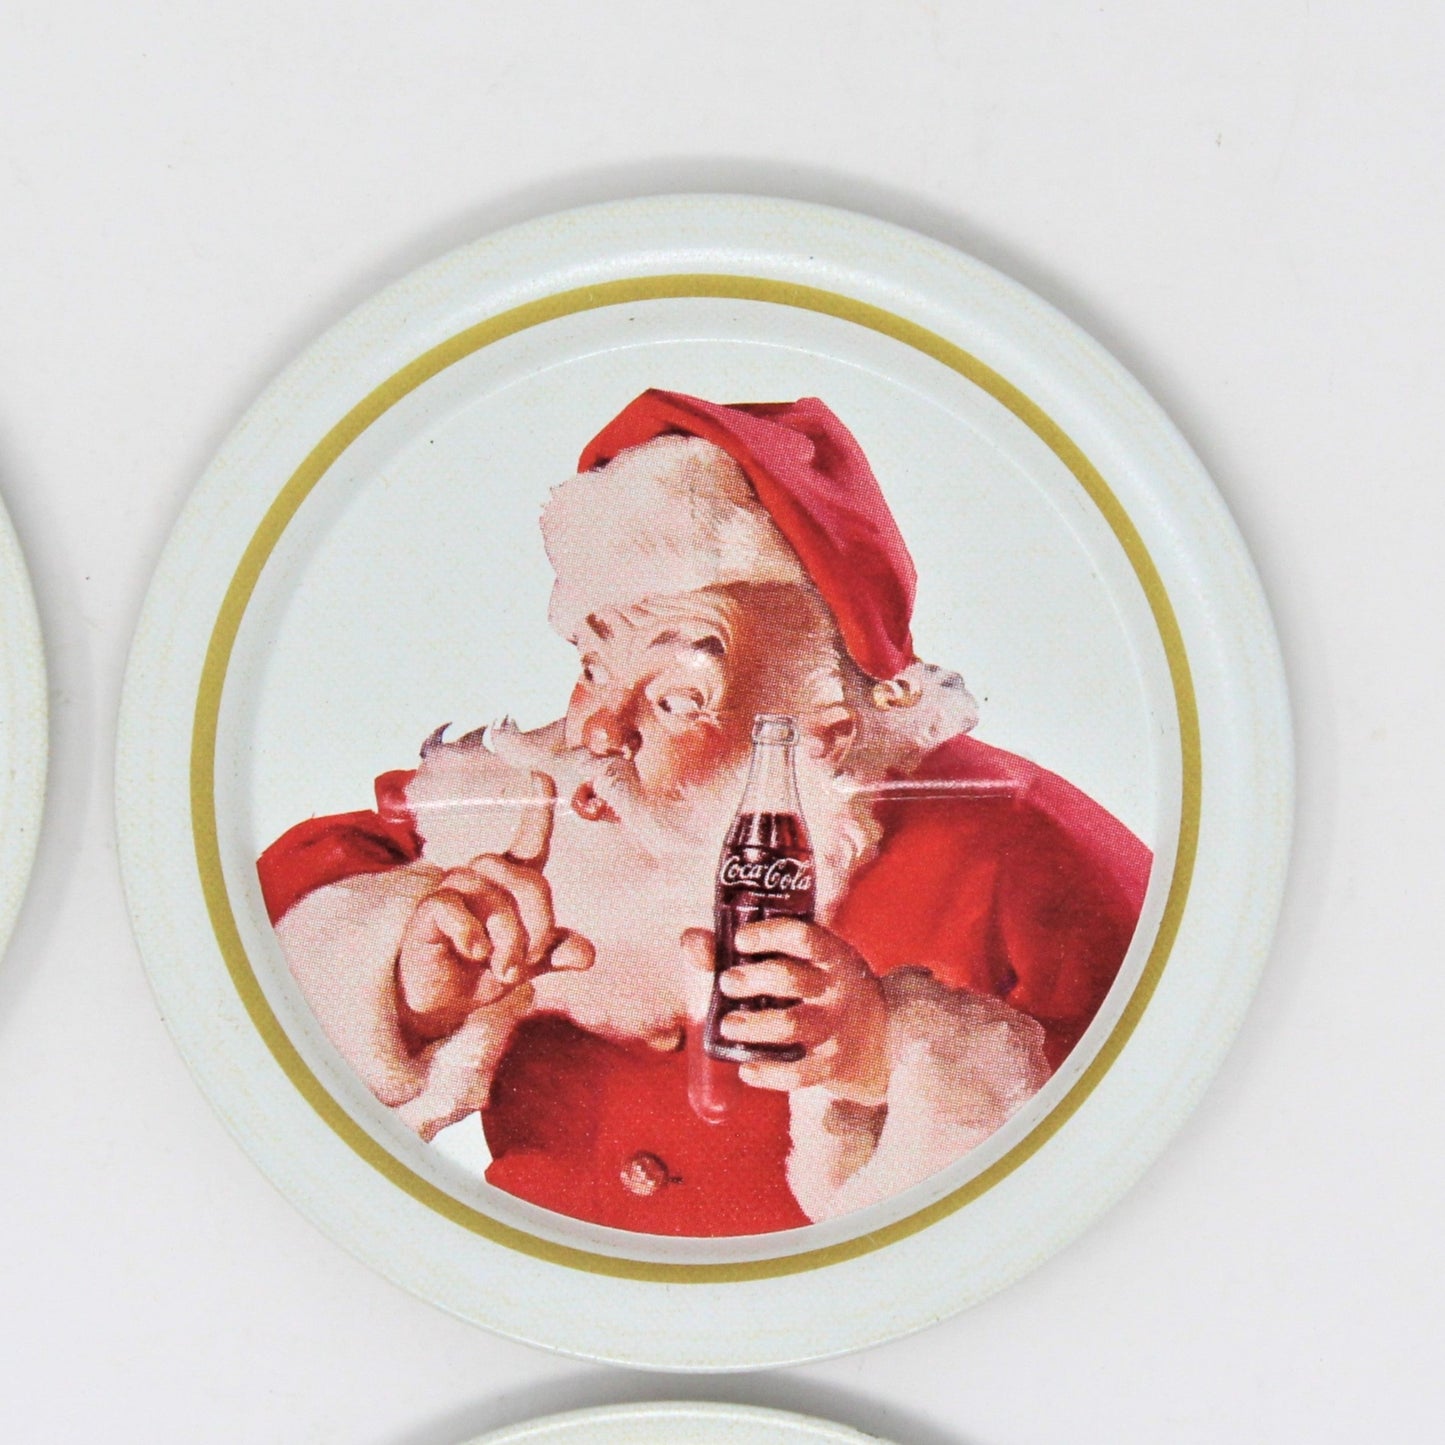 Coasters, Ohio Art Metal, Coca Cola Sundblom Santa, Shhhh / Quiet, Vintage